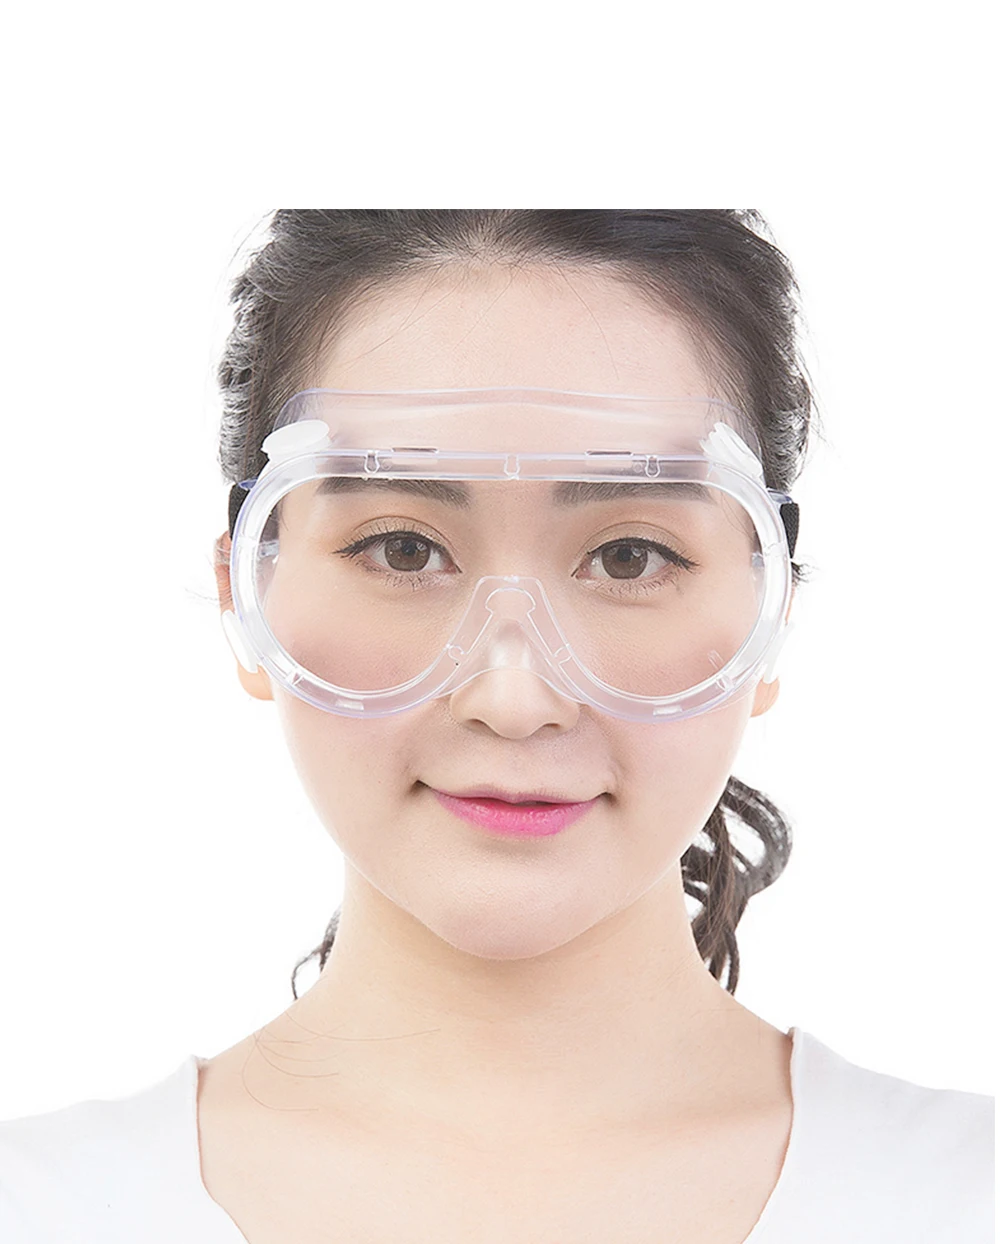 Abeso anti-воздействия и химических всплеск очки, защитные очки Пособия по экономике ясно Анти-туман объектив Защита глаз труда A7907